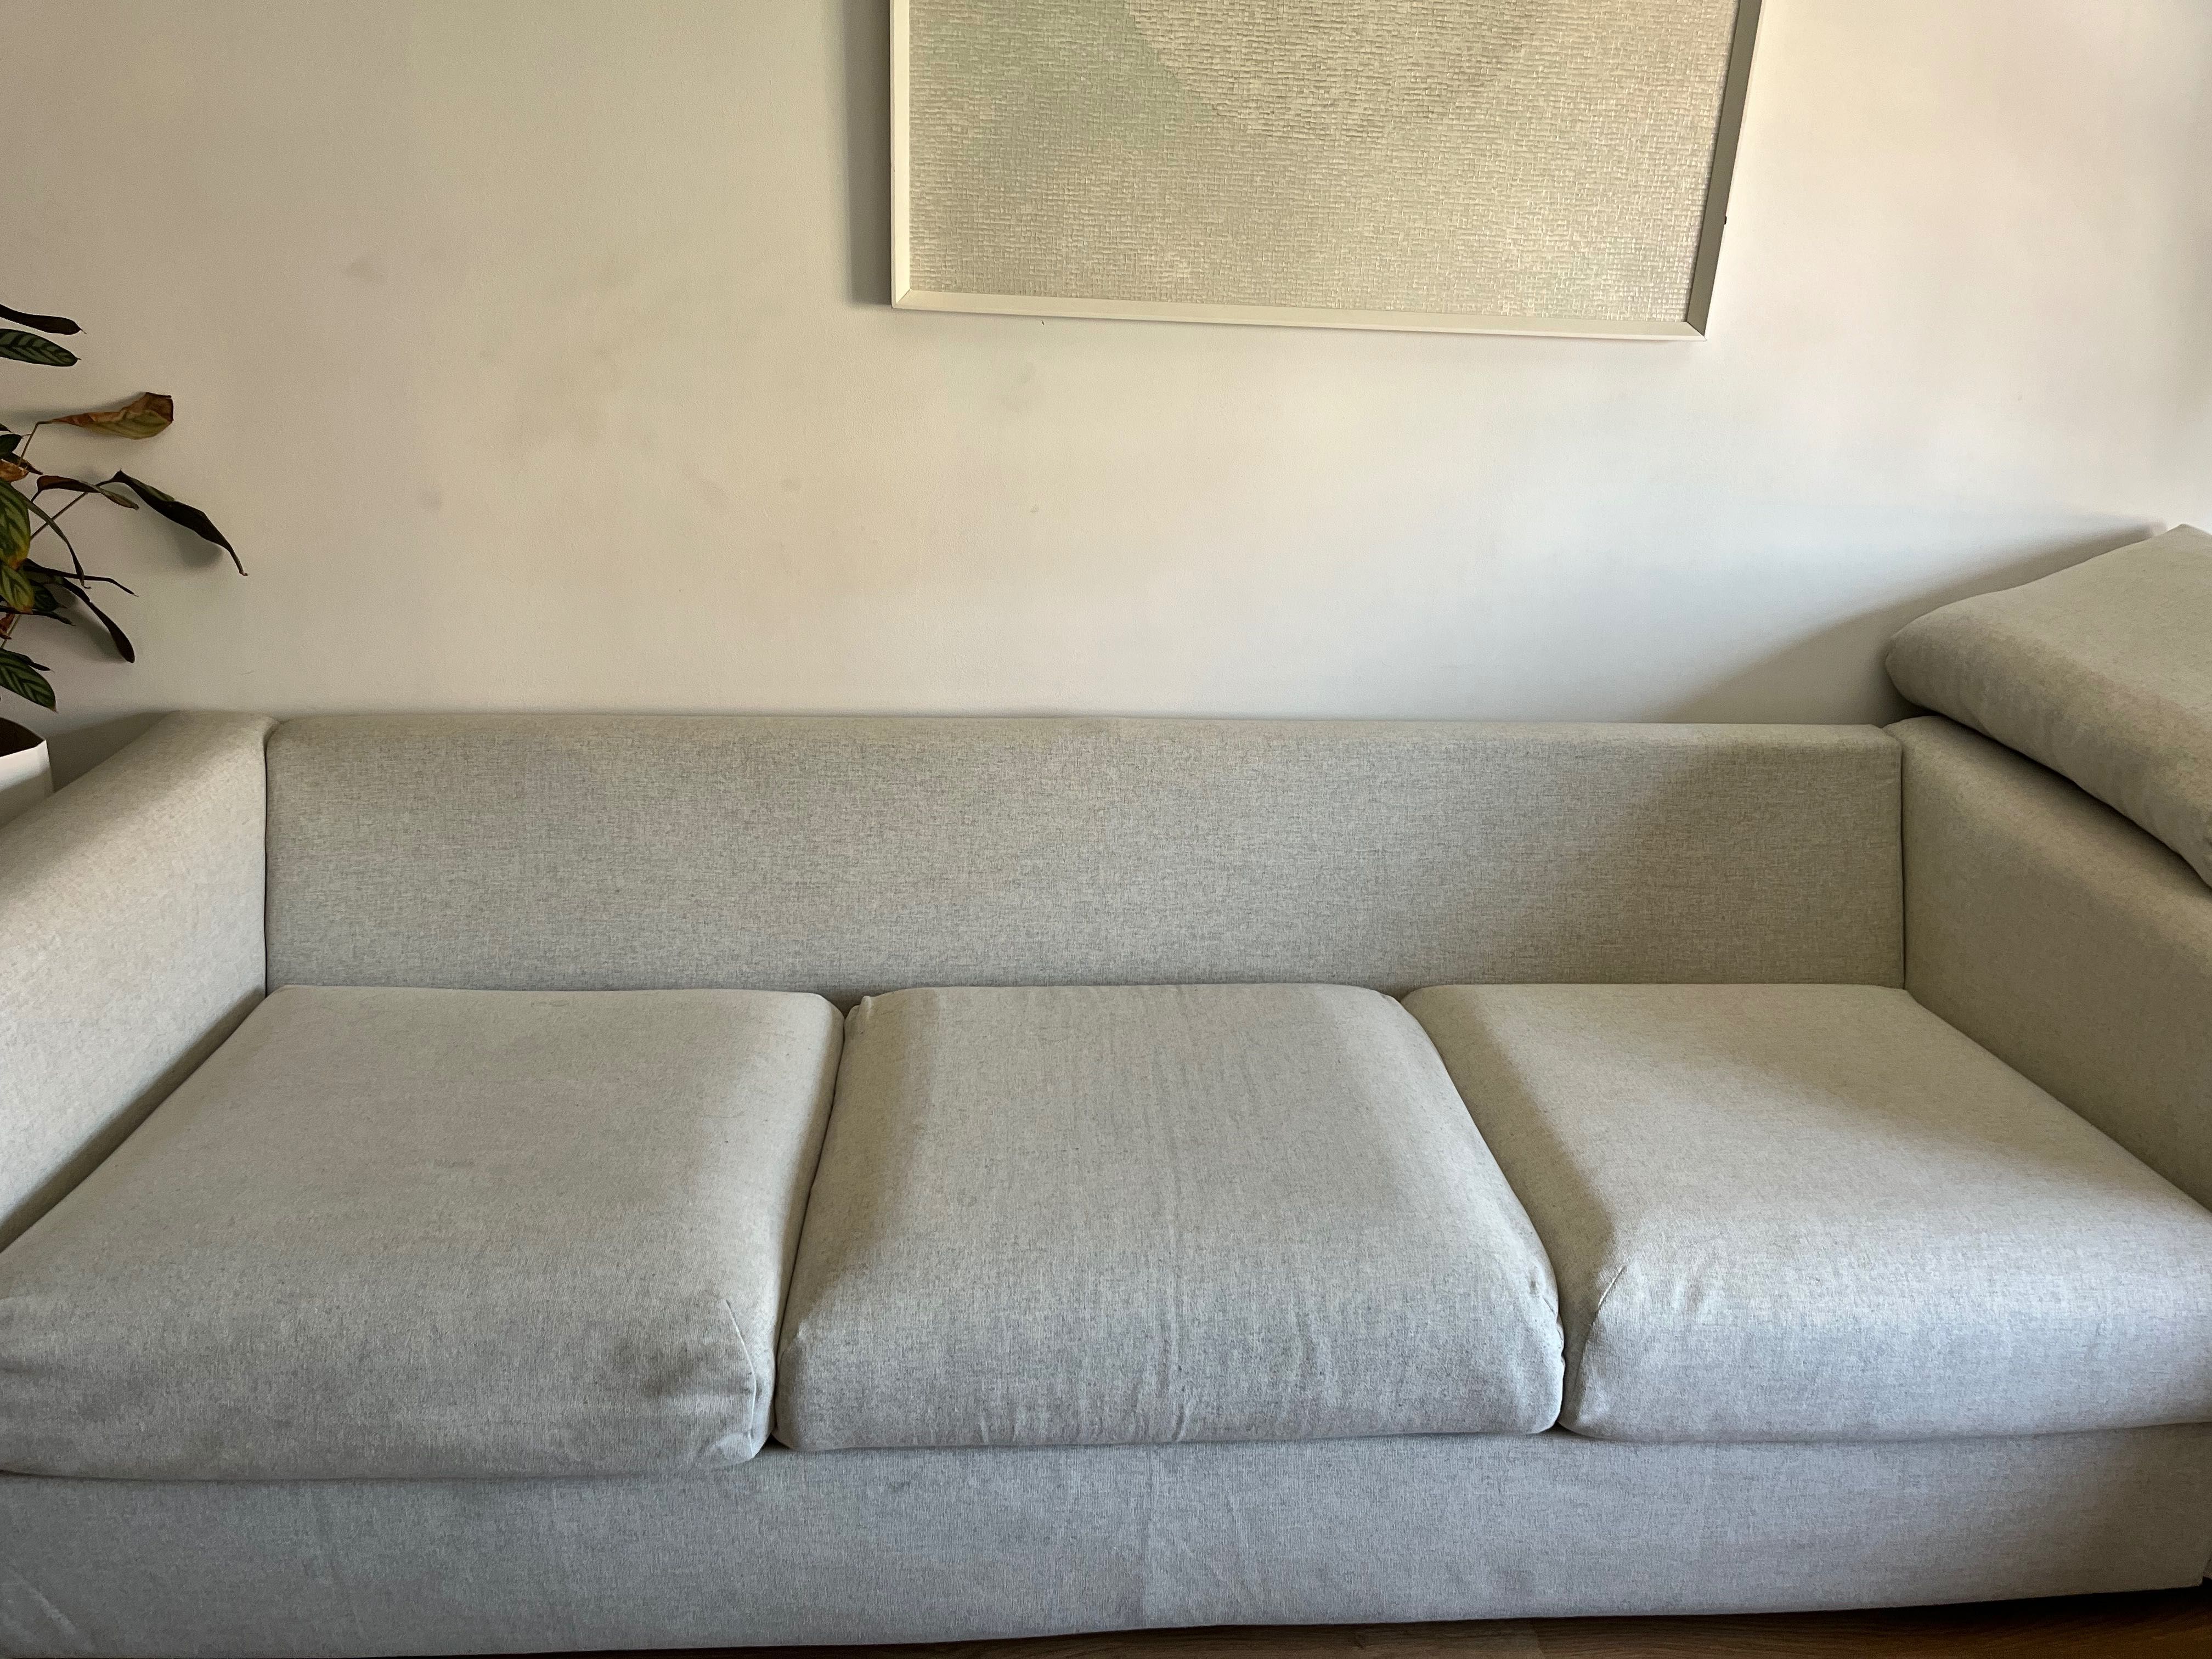 Sofa removivel 3 lugares IKEA